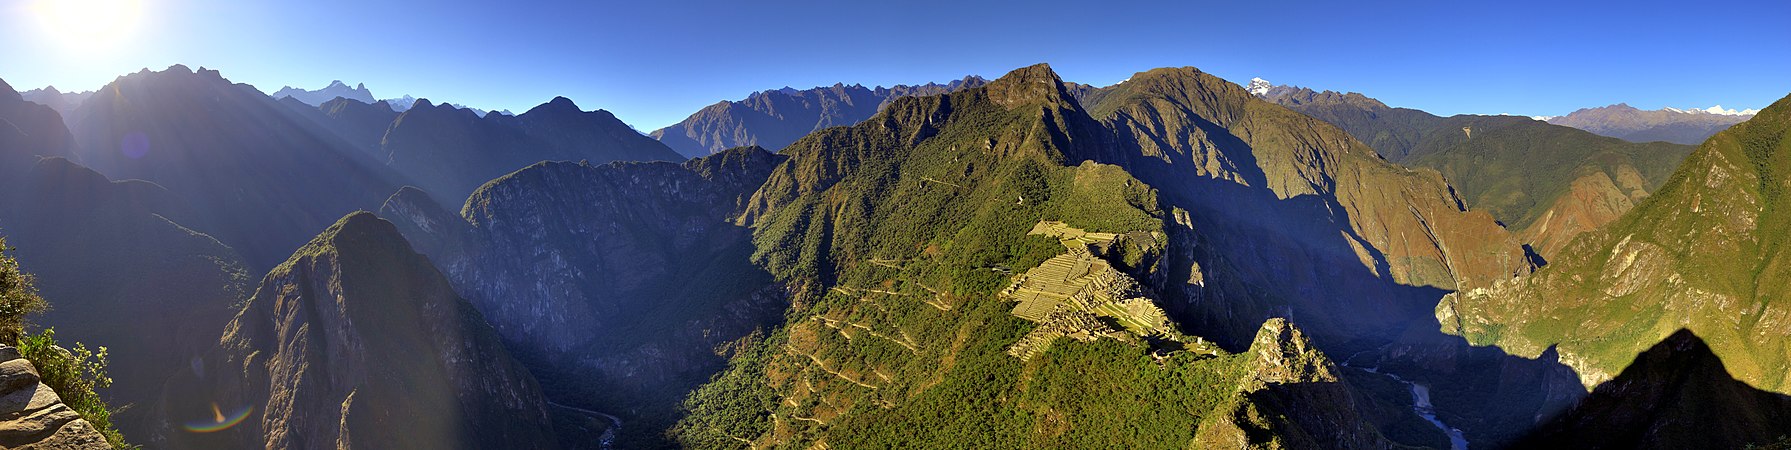 Machu Picchu, by S23678